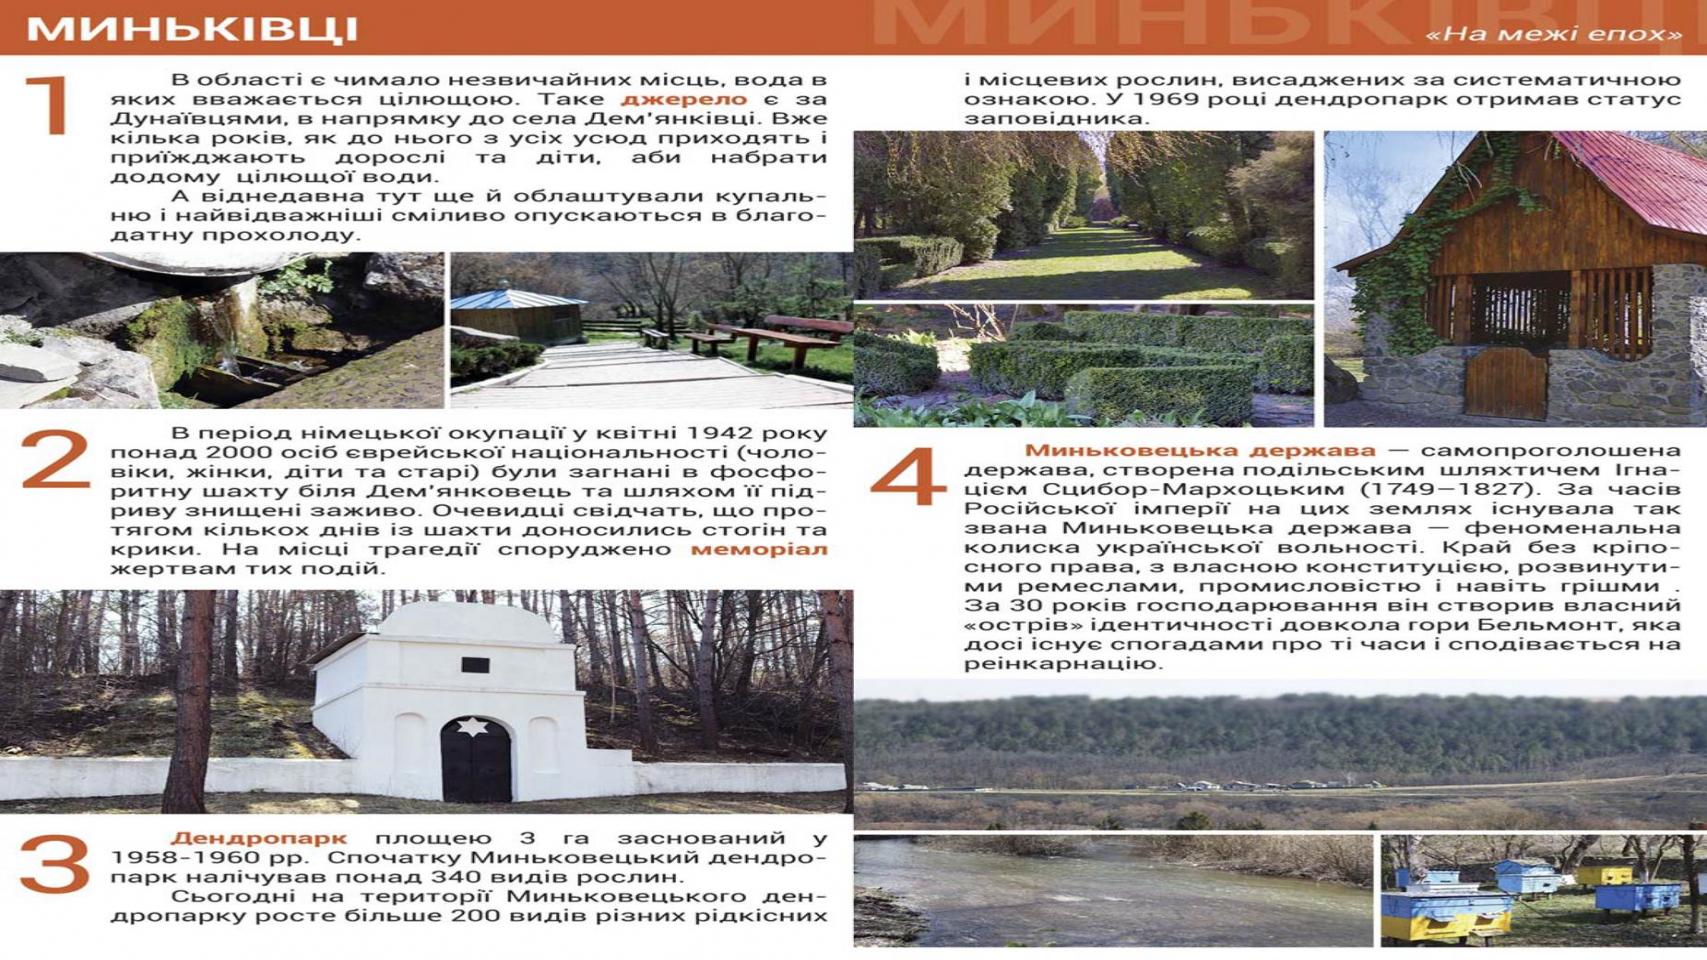 http://dunrada.gov.ua/uploadfile/archive_article/2020/01/31/2020-01-31_678/images/images-70487.jpg